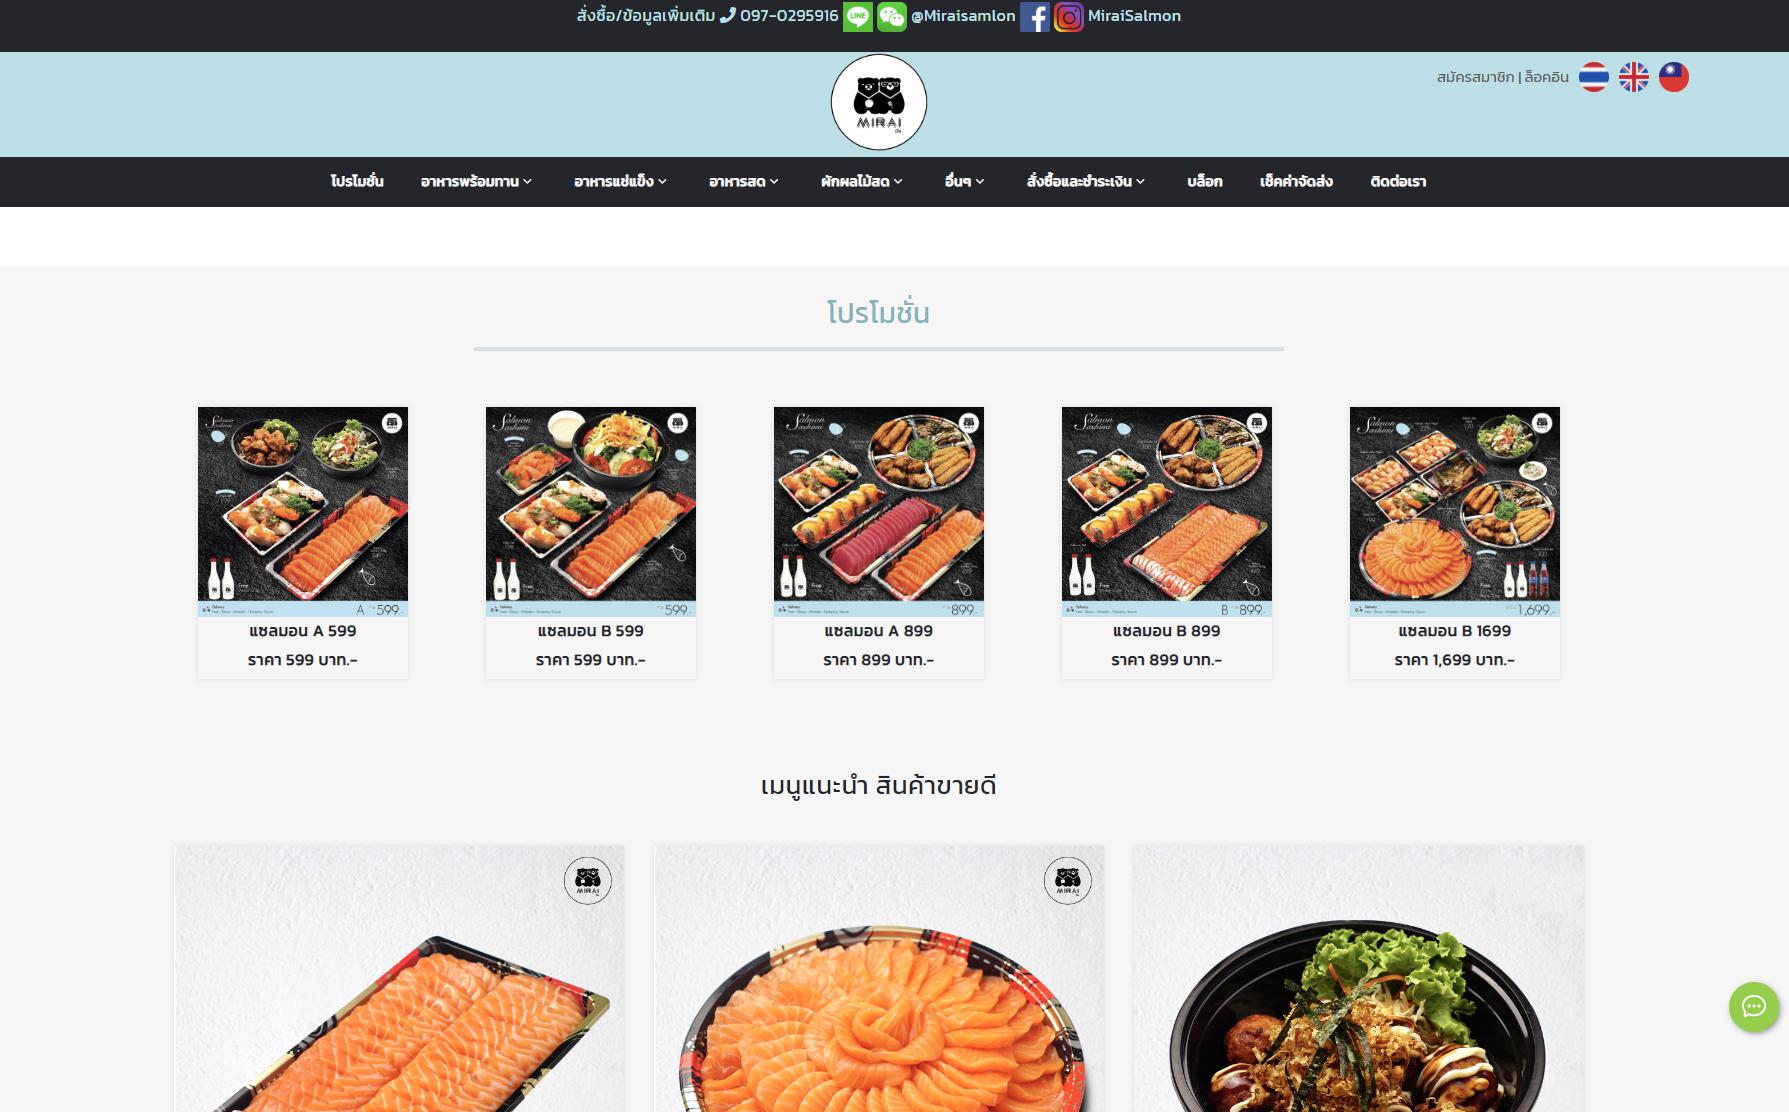 รับทำเว็บไซต์ รับออกแบบเว็บไซต์ เว็บไซต์สำเร็จรูป ตัวอย่างเว็บไซต์ - อาหารสด TTT-WEBSITE